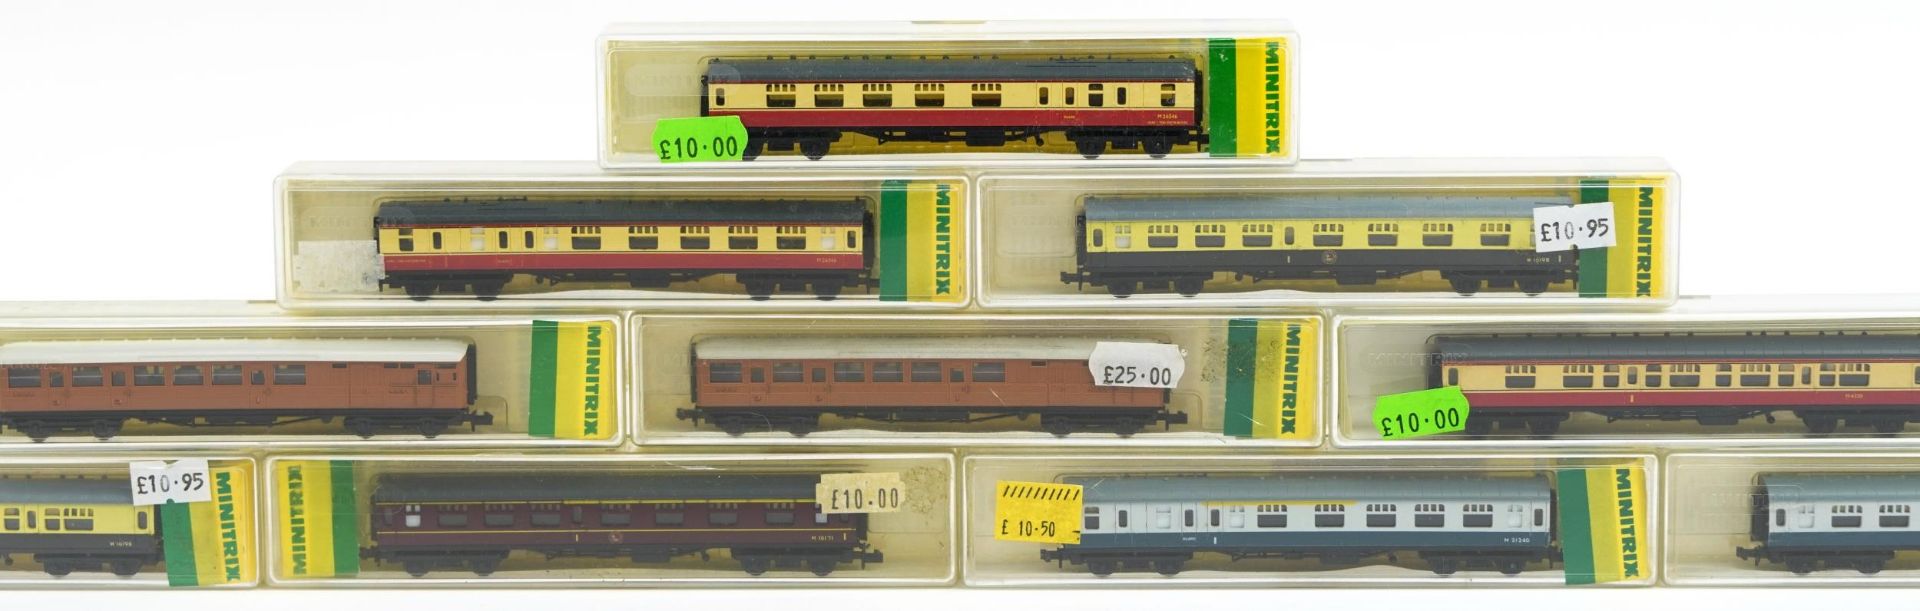 Ten Minitrix N gauge model railway carriages with cases, numbers 13003, 13004, 13005, 13006, - Bild 3 aus 5